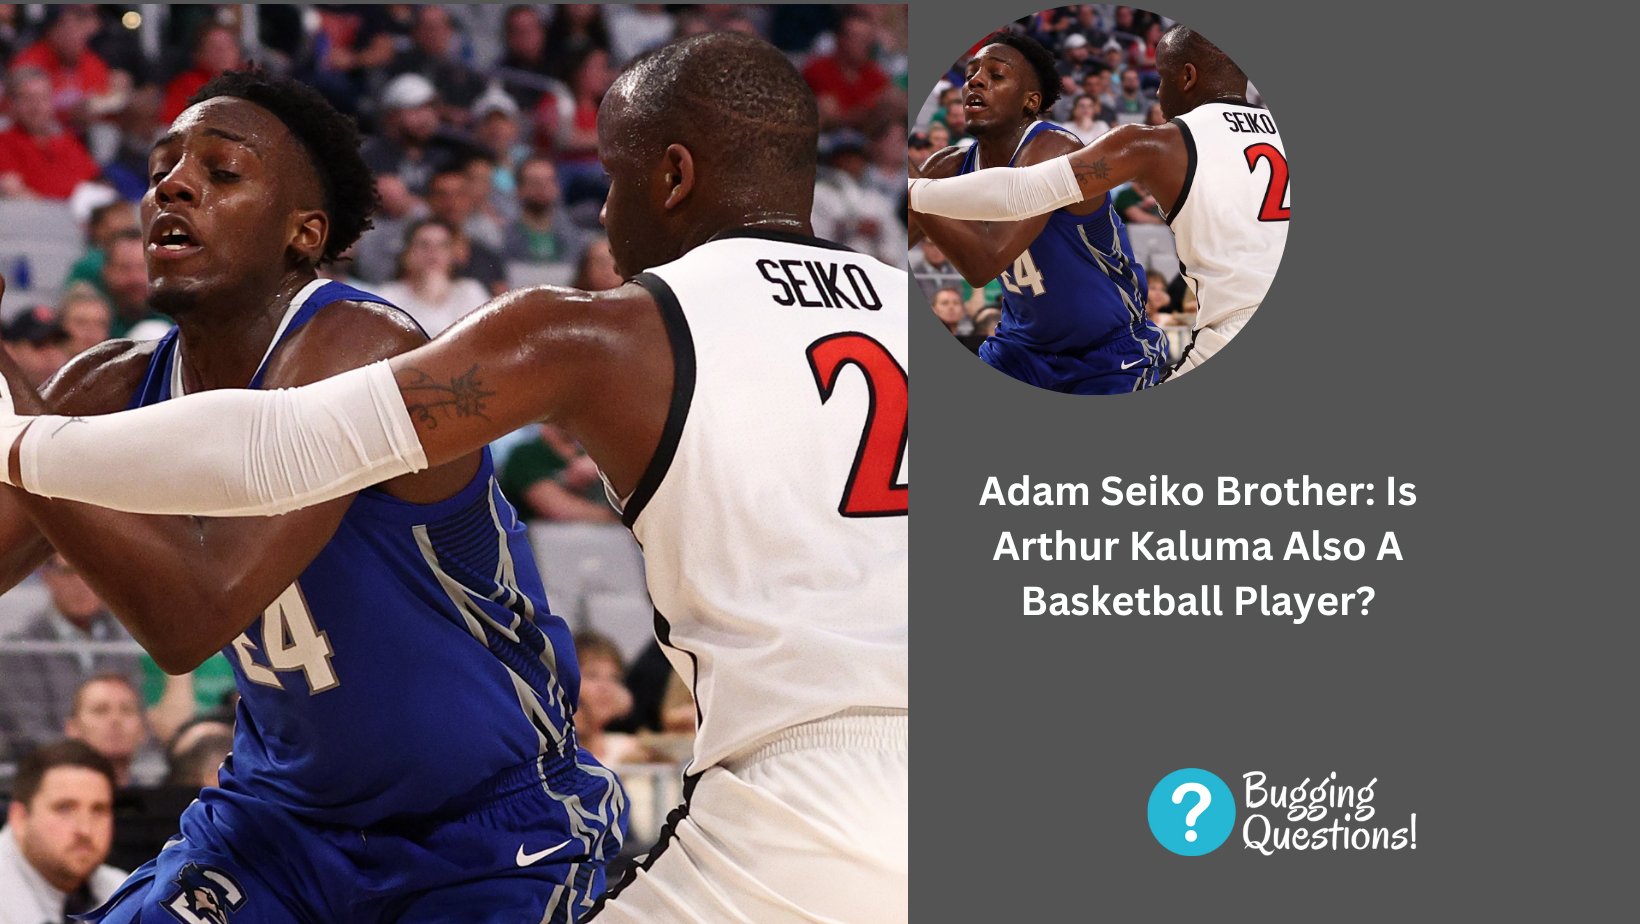 Adam Seiko Brother: Is Arthur Kaluma Also A Basketball Player?